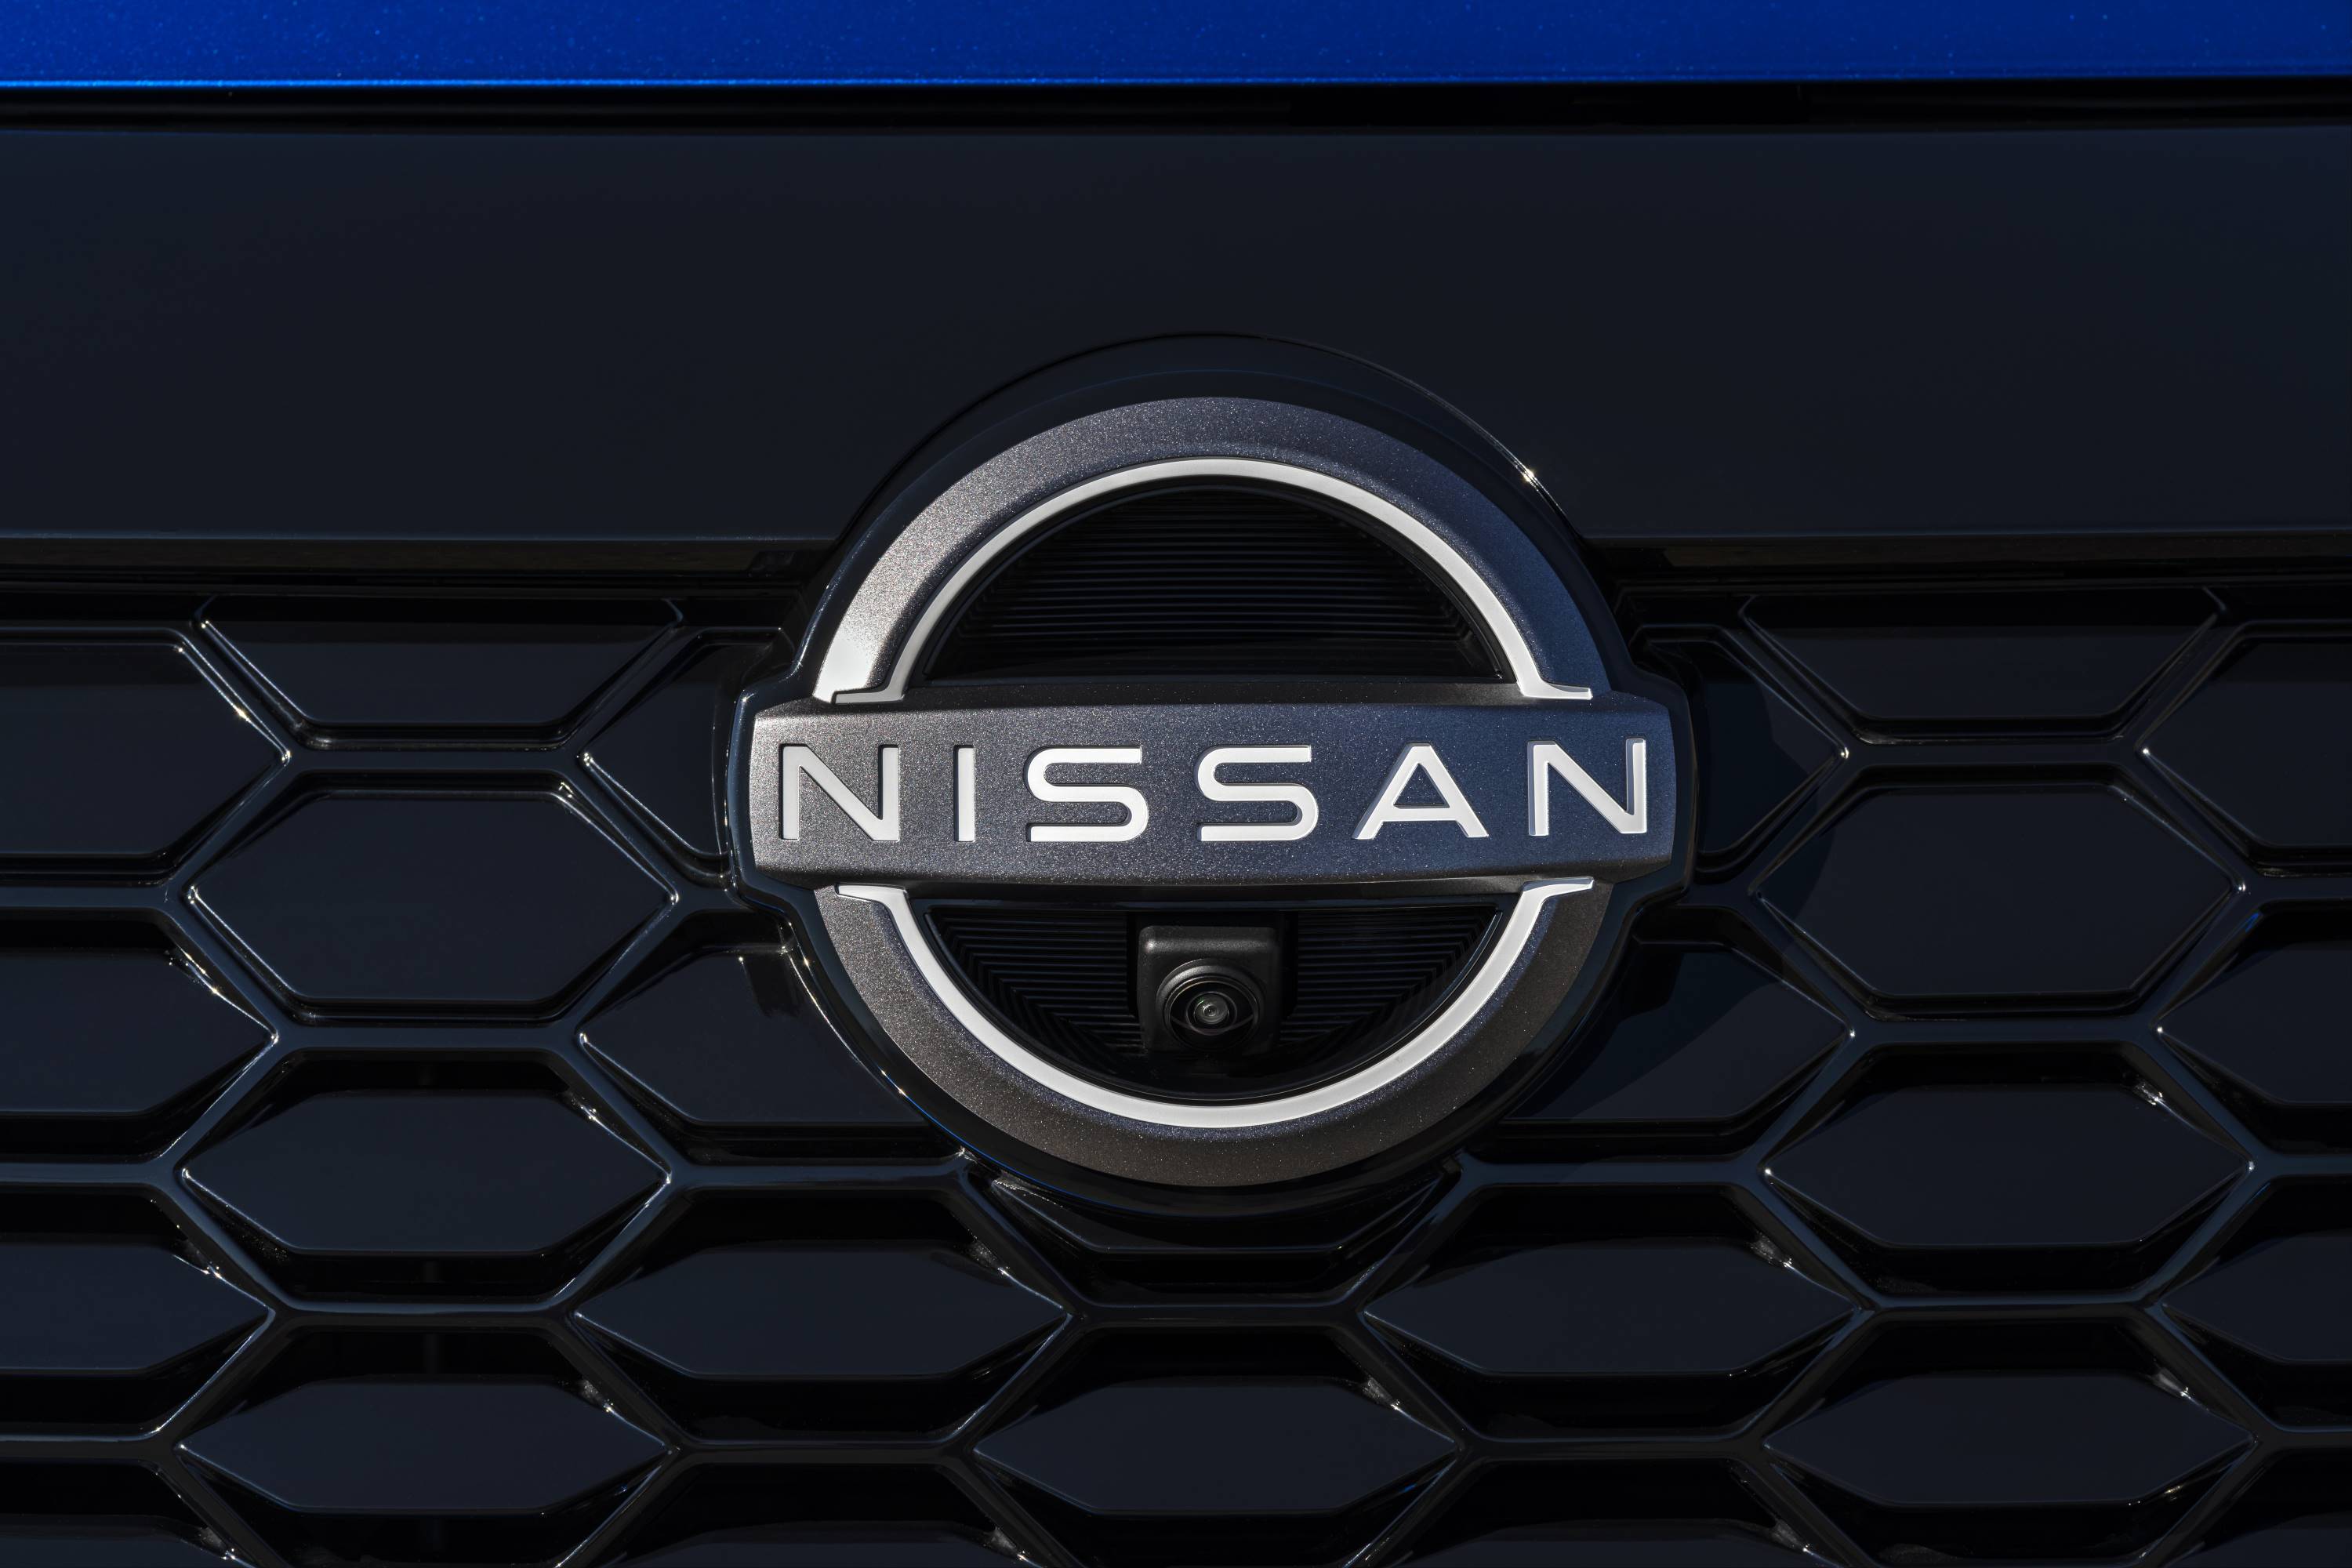 Nissan Juke Hybrid Blue